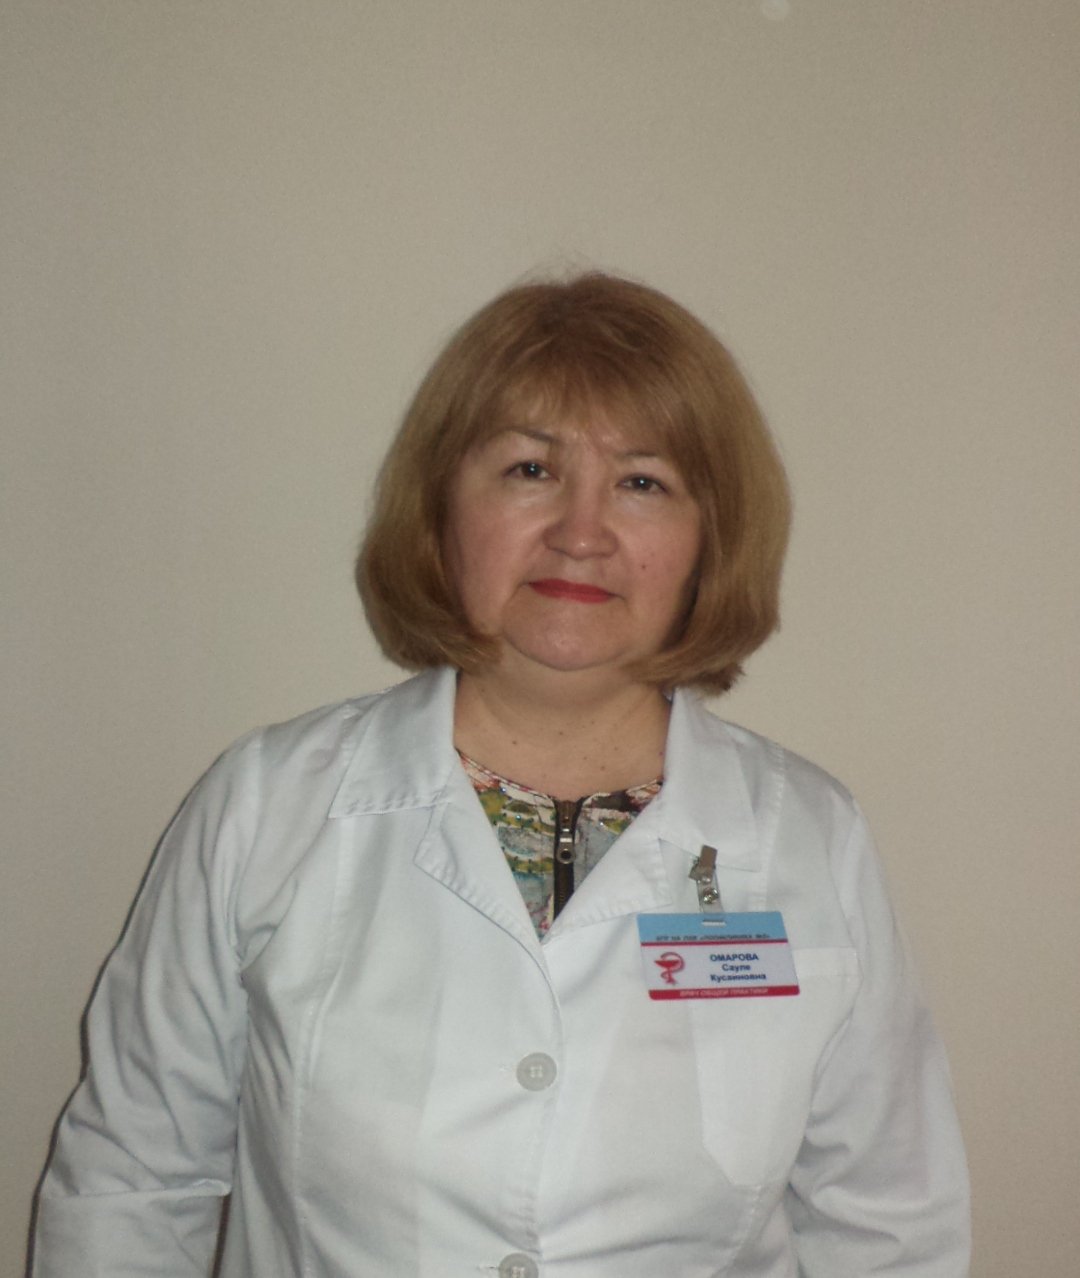  Омарова Сауле Кусаиновна — врач общей практики 